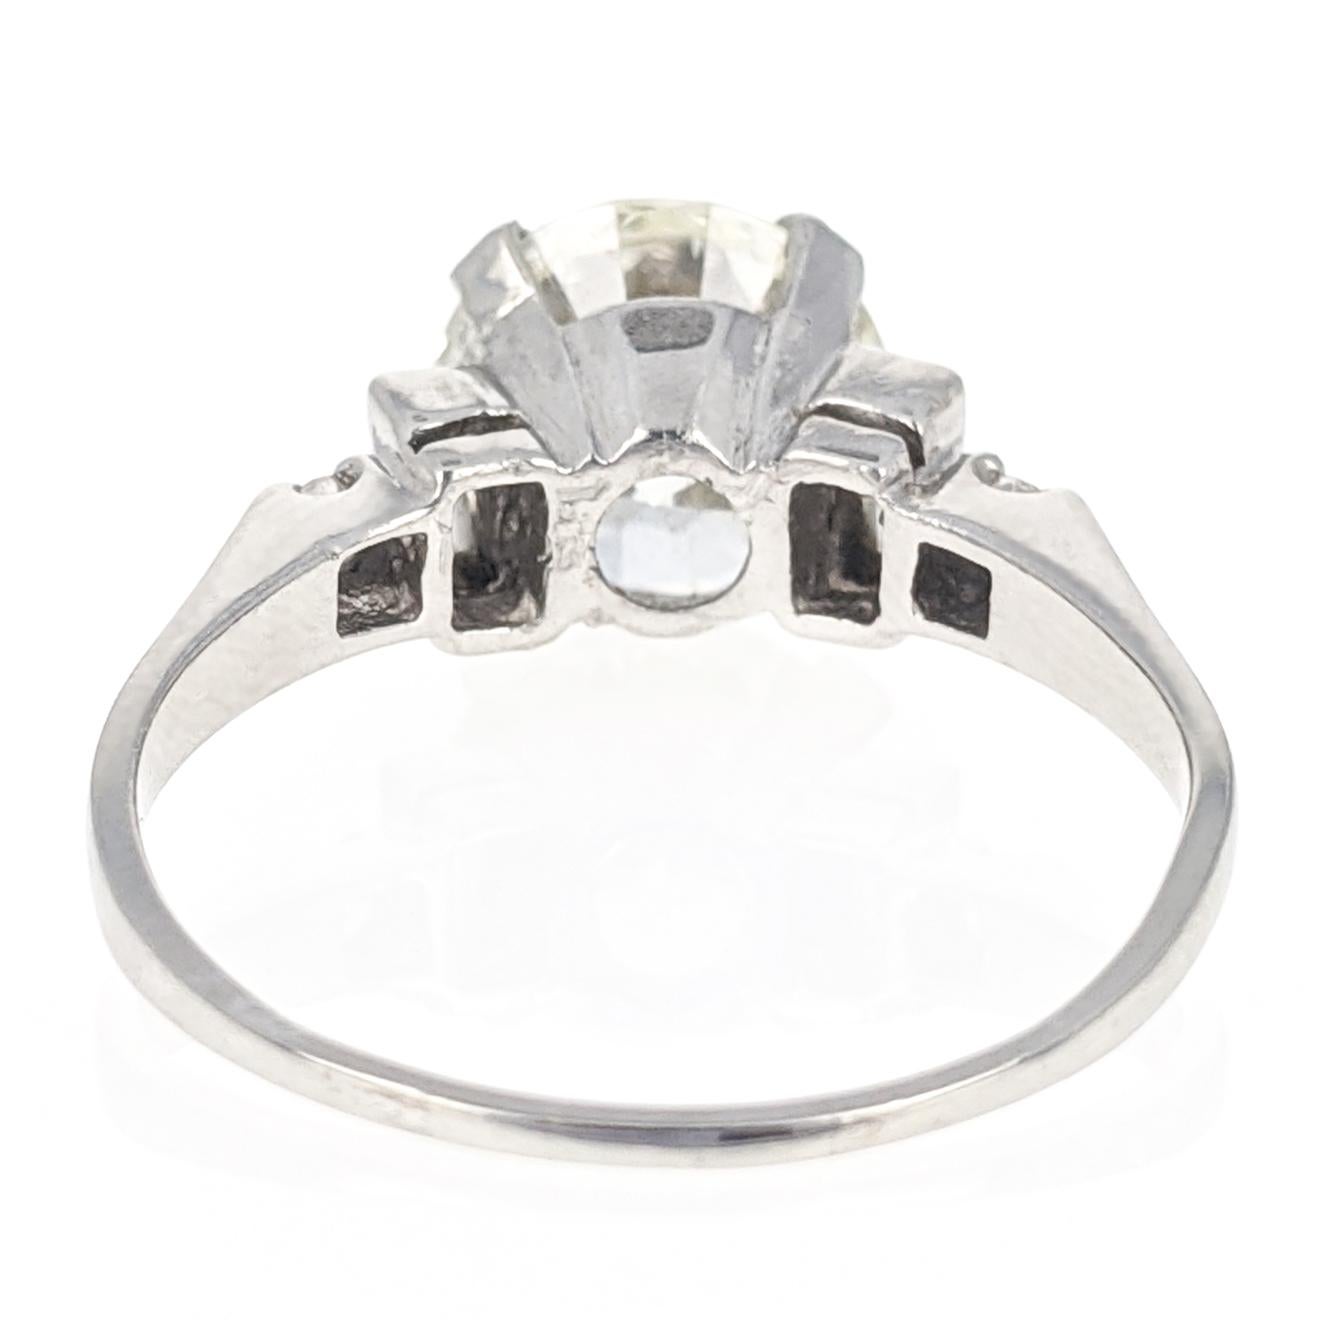 3.02 Carat GIA Certified Round Brilliant Cut Diamond Platinum Engagement Ring 2